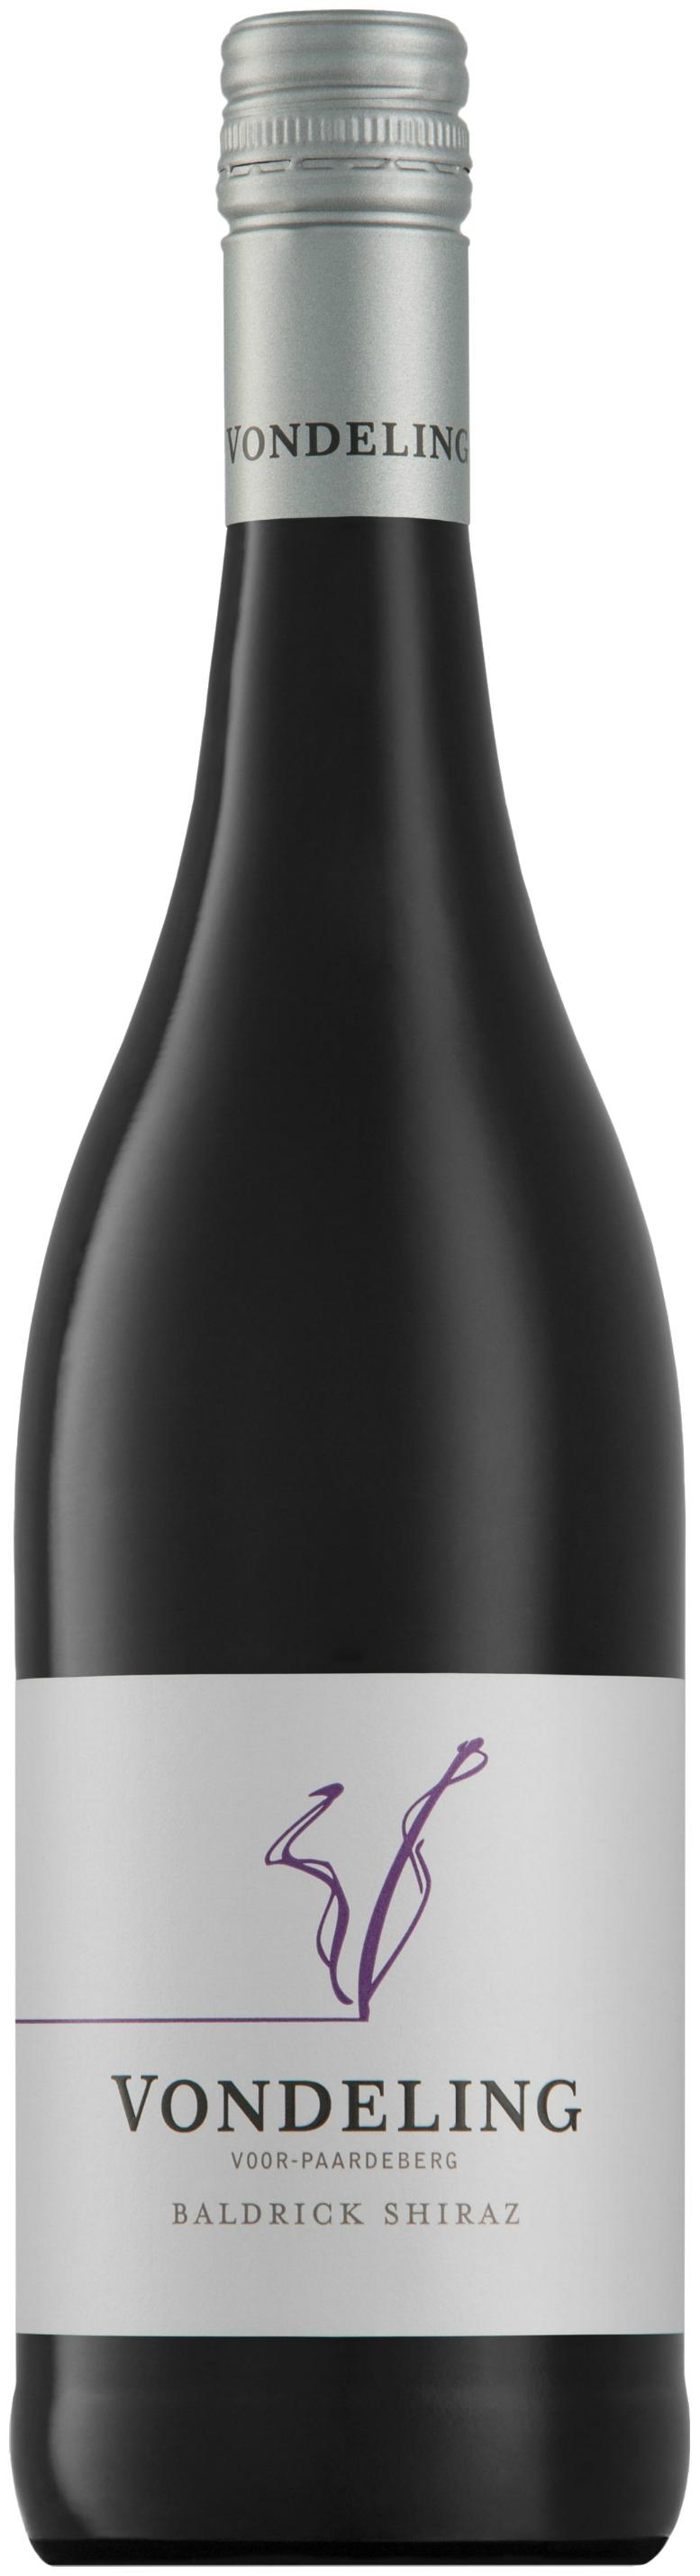 Vondeling Baldrick Shiraz (Rotwein, oHG Wines Südafrika, Curry Paarl) Premium 